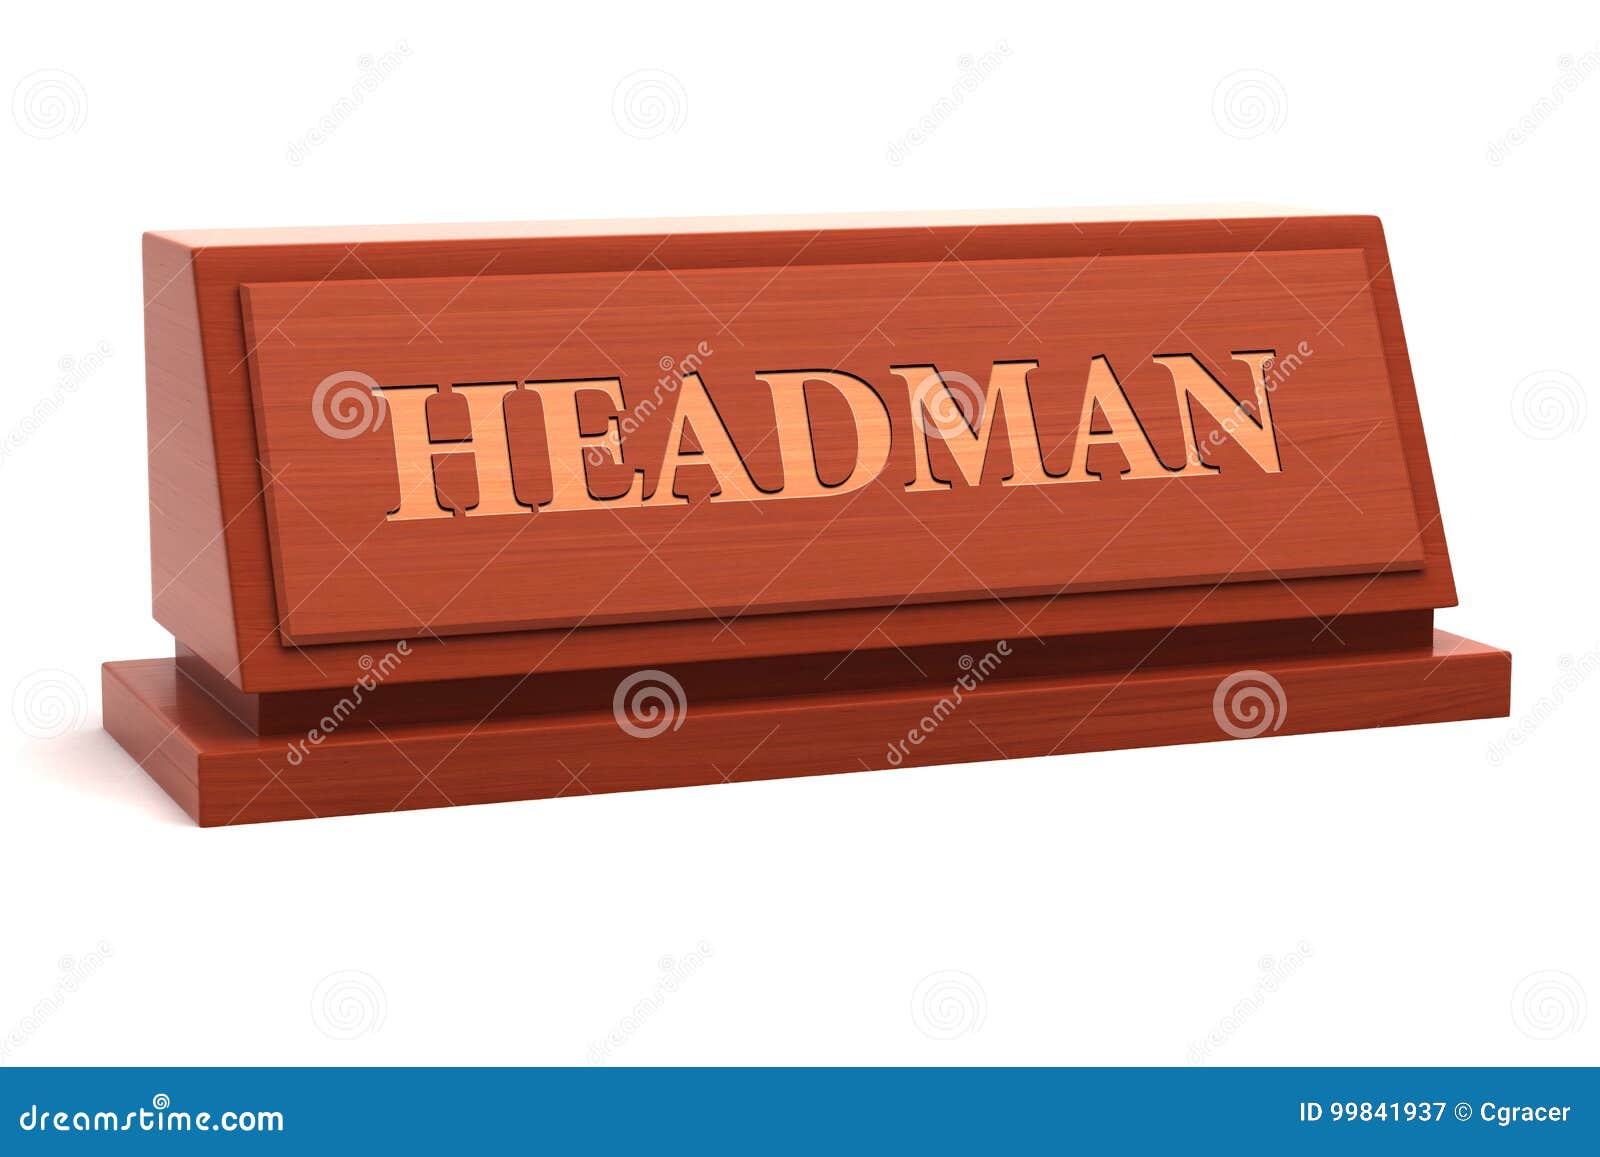 headman job title